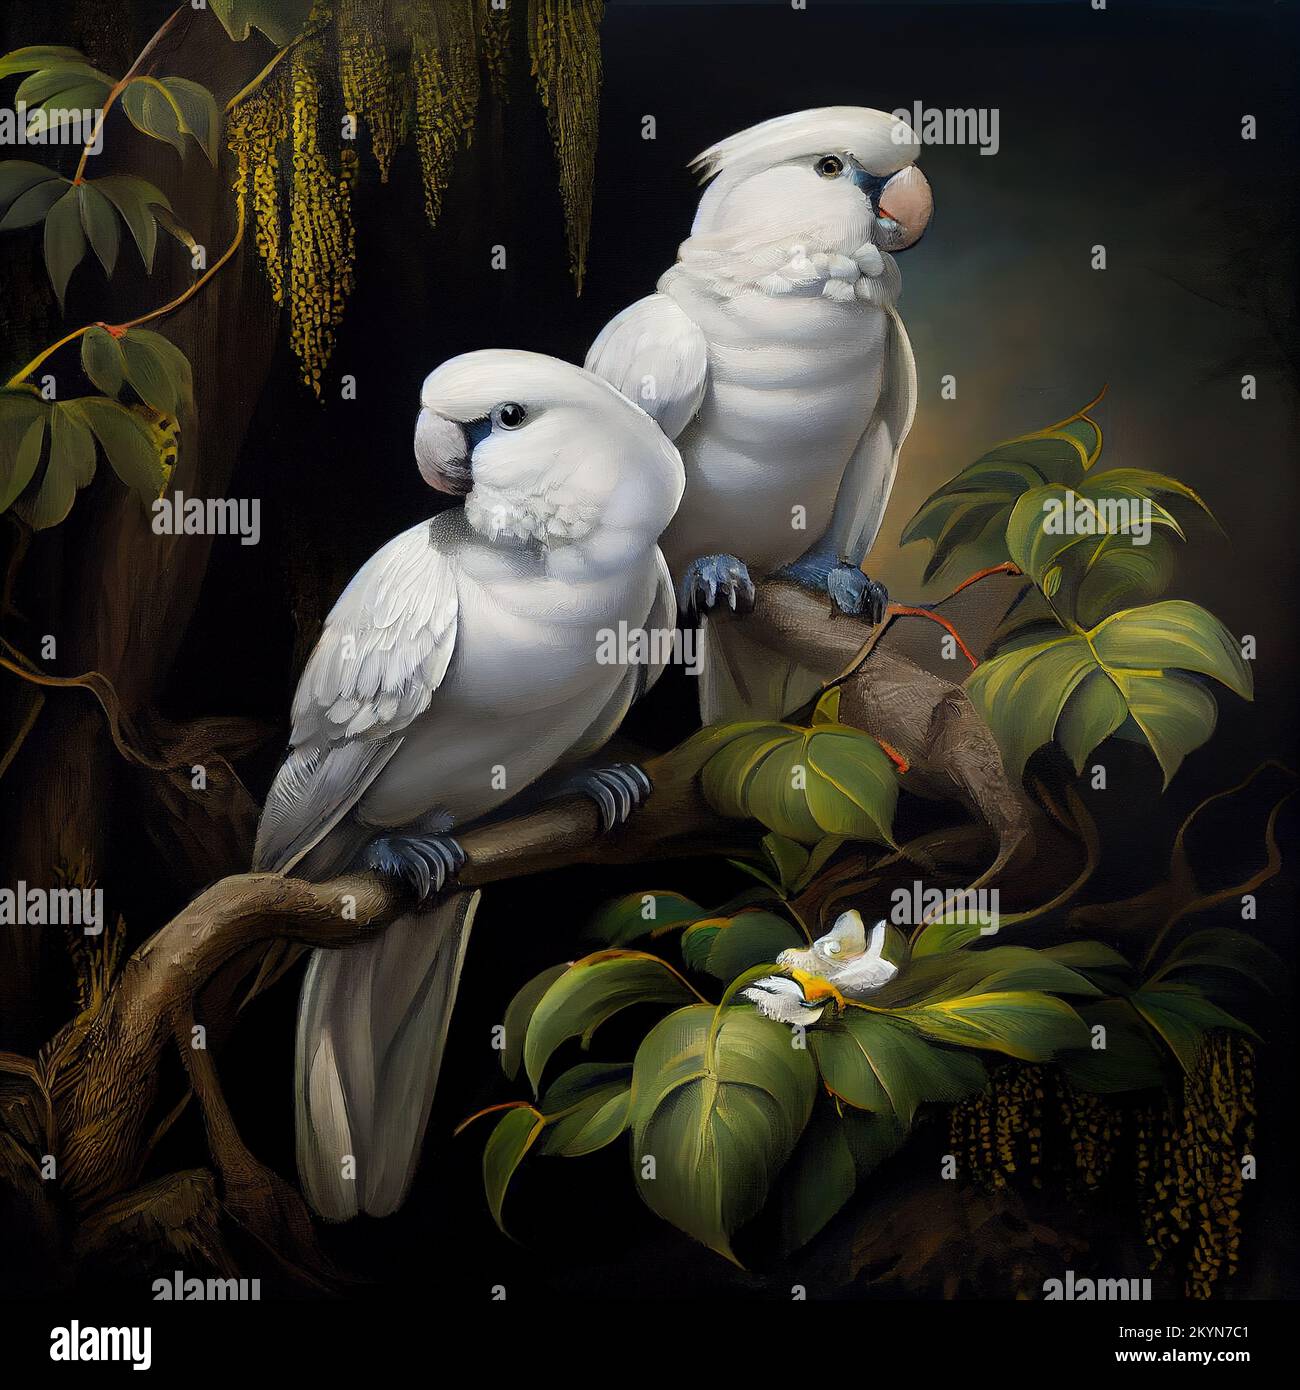 Una pintura digitálica generada de dos loros blancos sentados en una rama de árbol Foto de stock